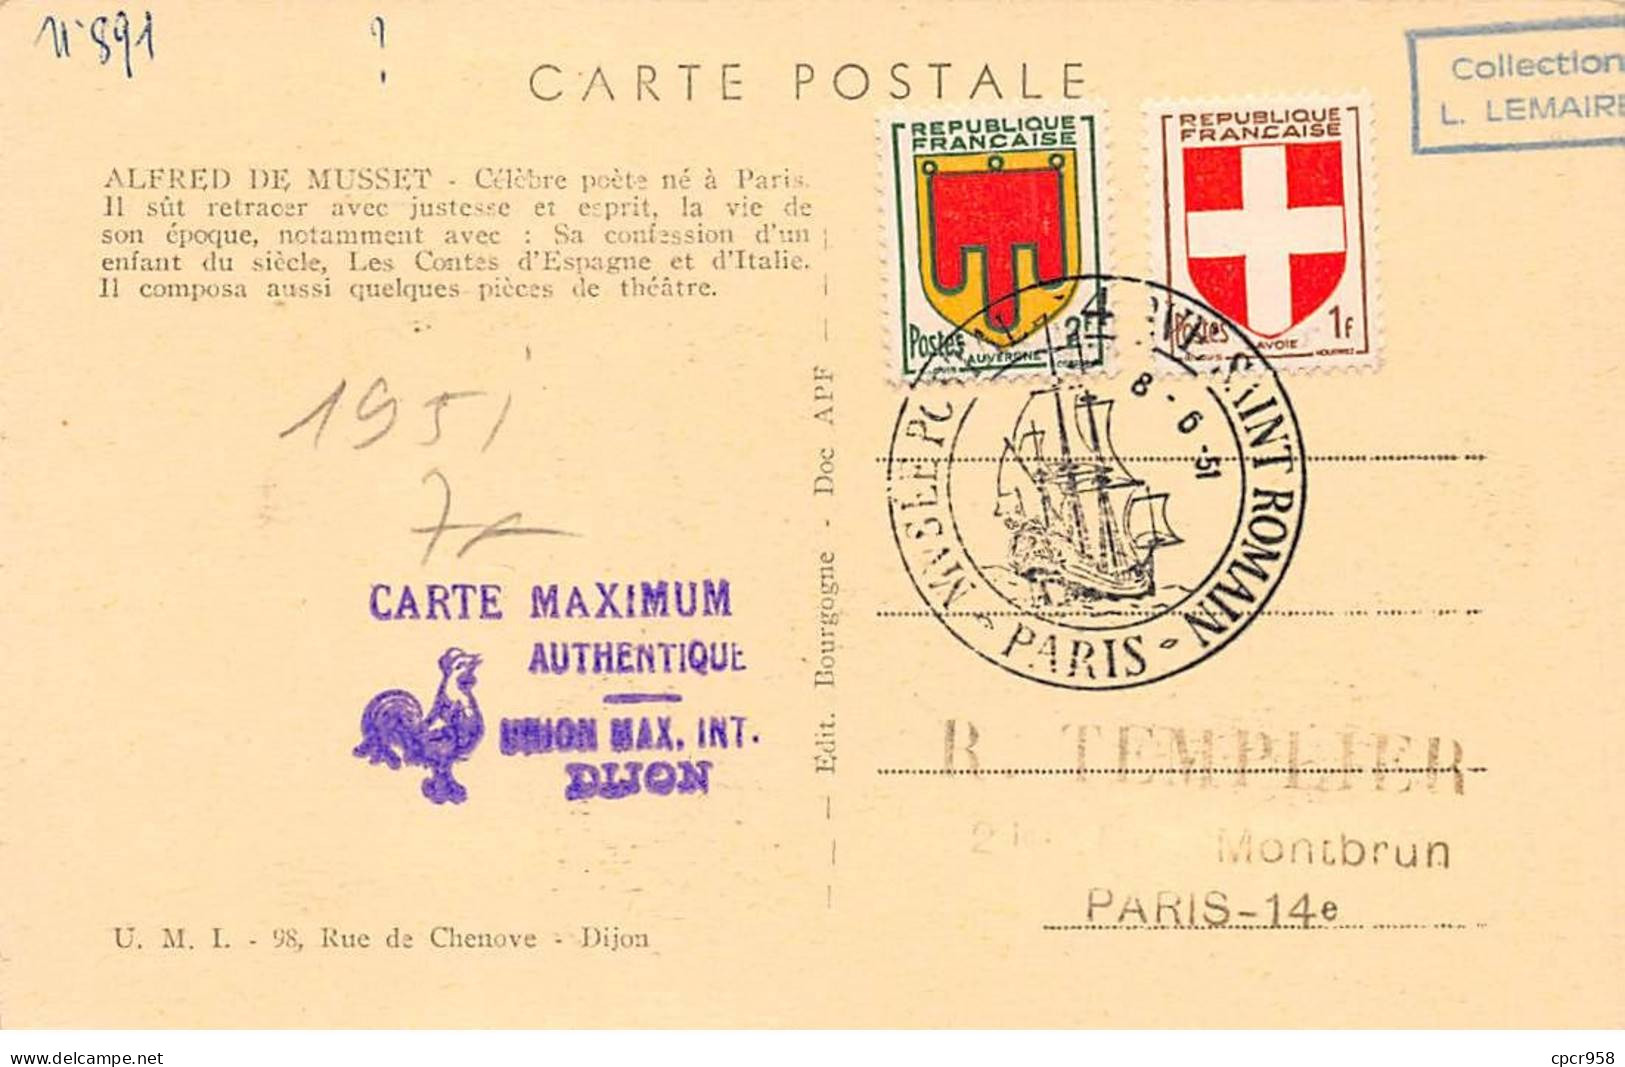 FRANCE.Carte Maximum.AM13759.08/06/1951.Cachet Paris.Alfred De Musset.1810-1857 - 1950-1959